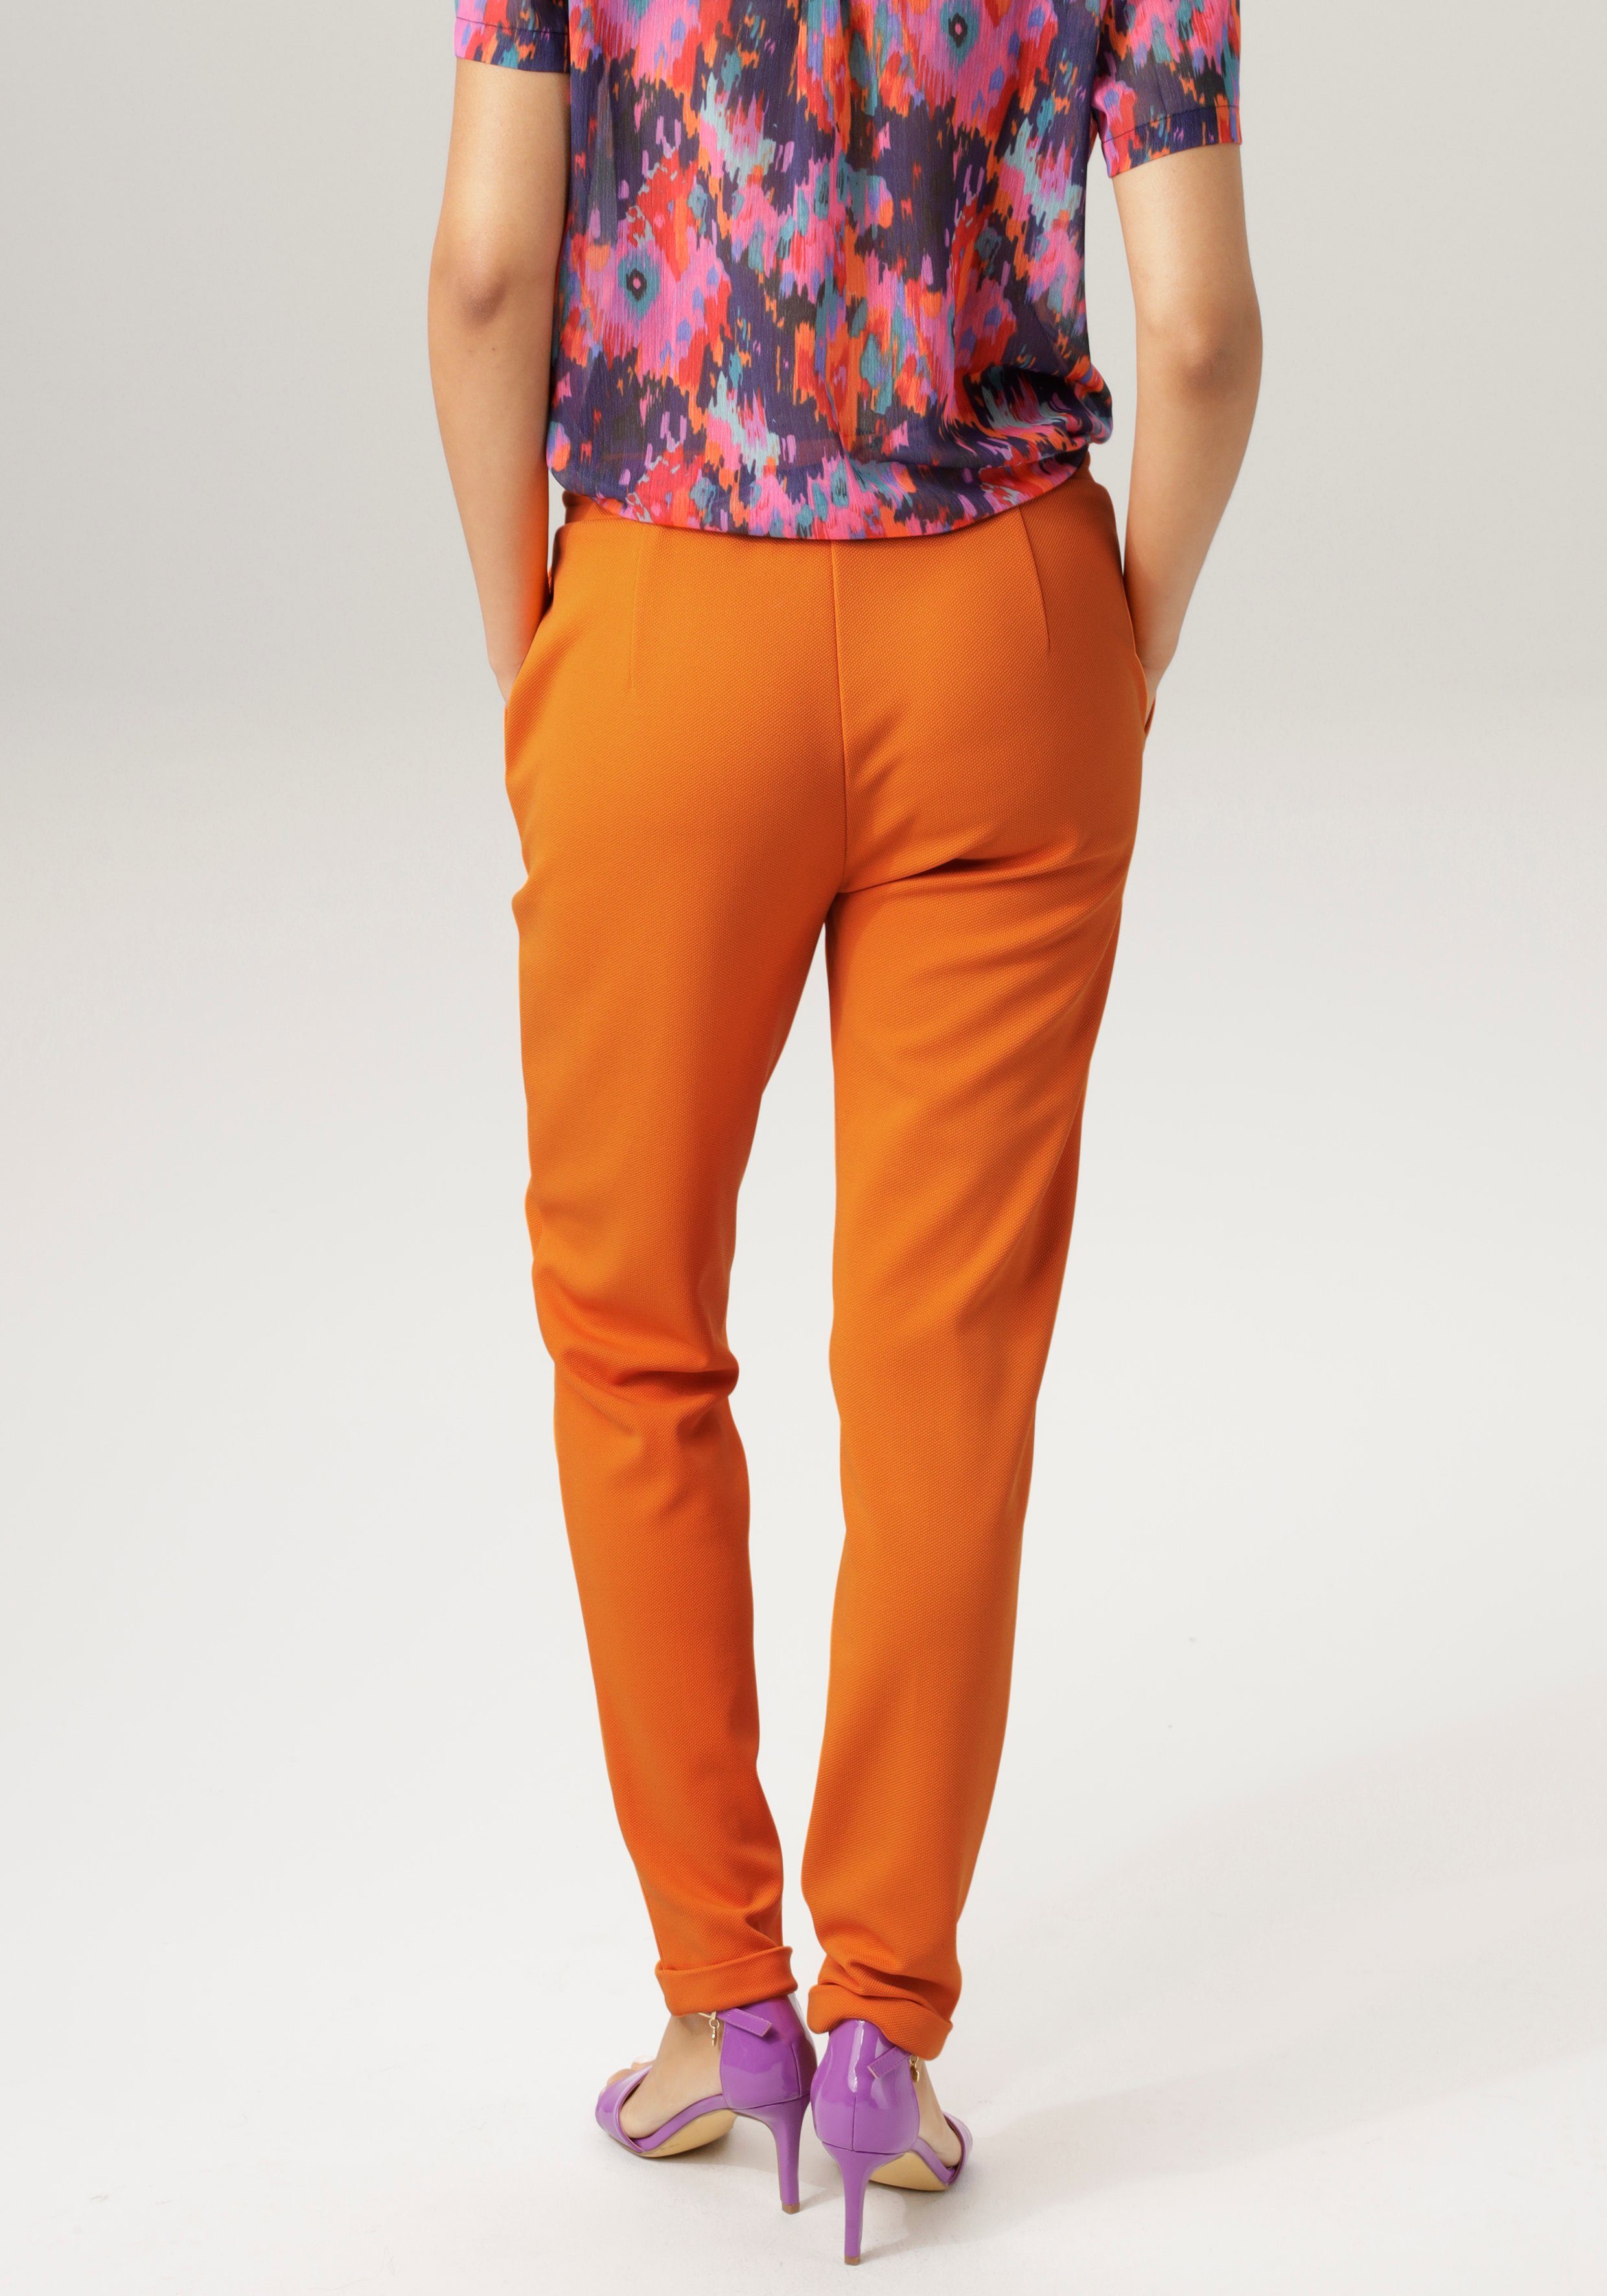 Aniston CASUAL Schlupfhose in strukturierter orange Jersey-Qualität